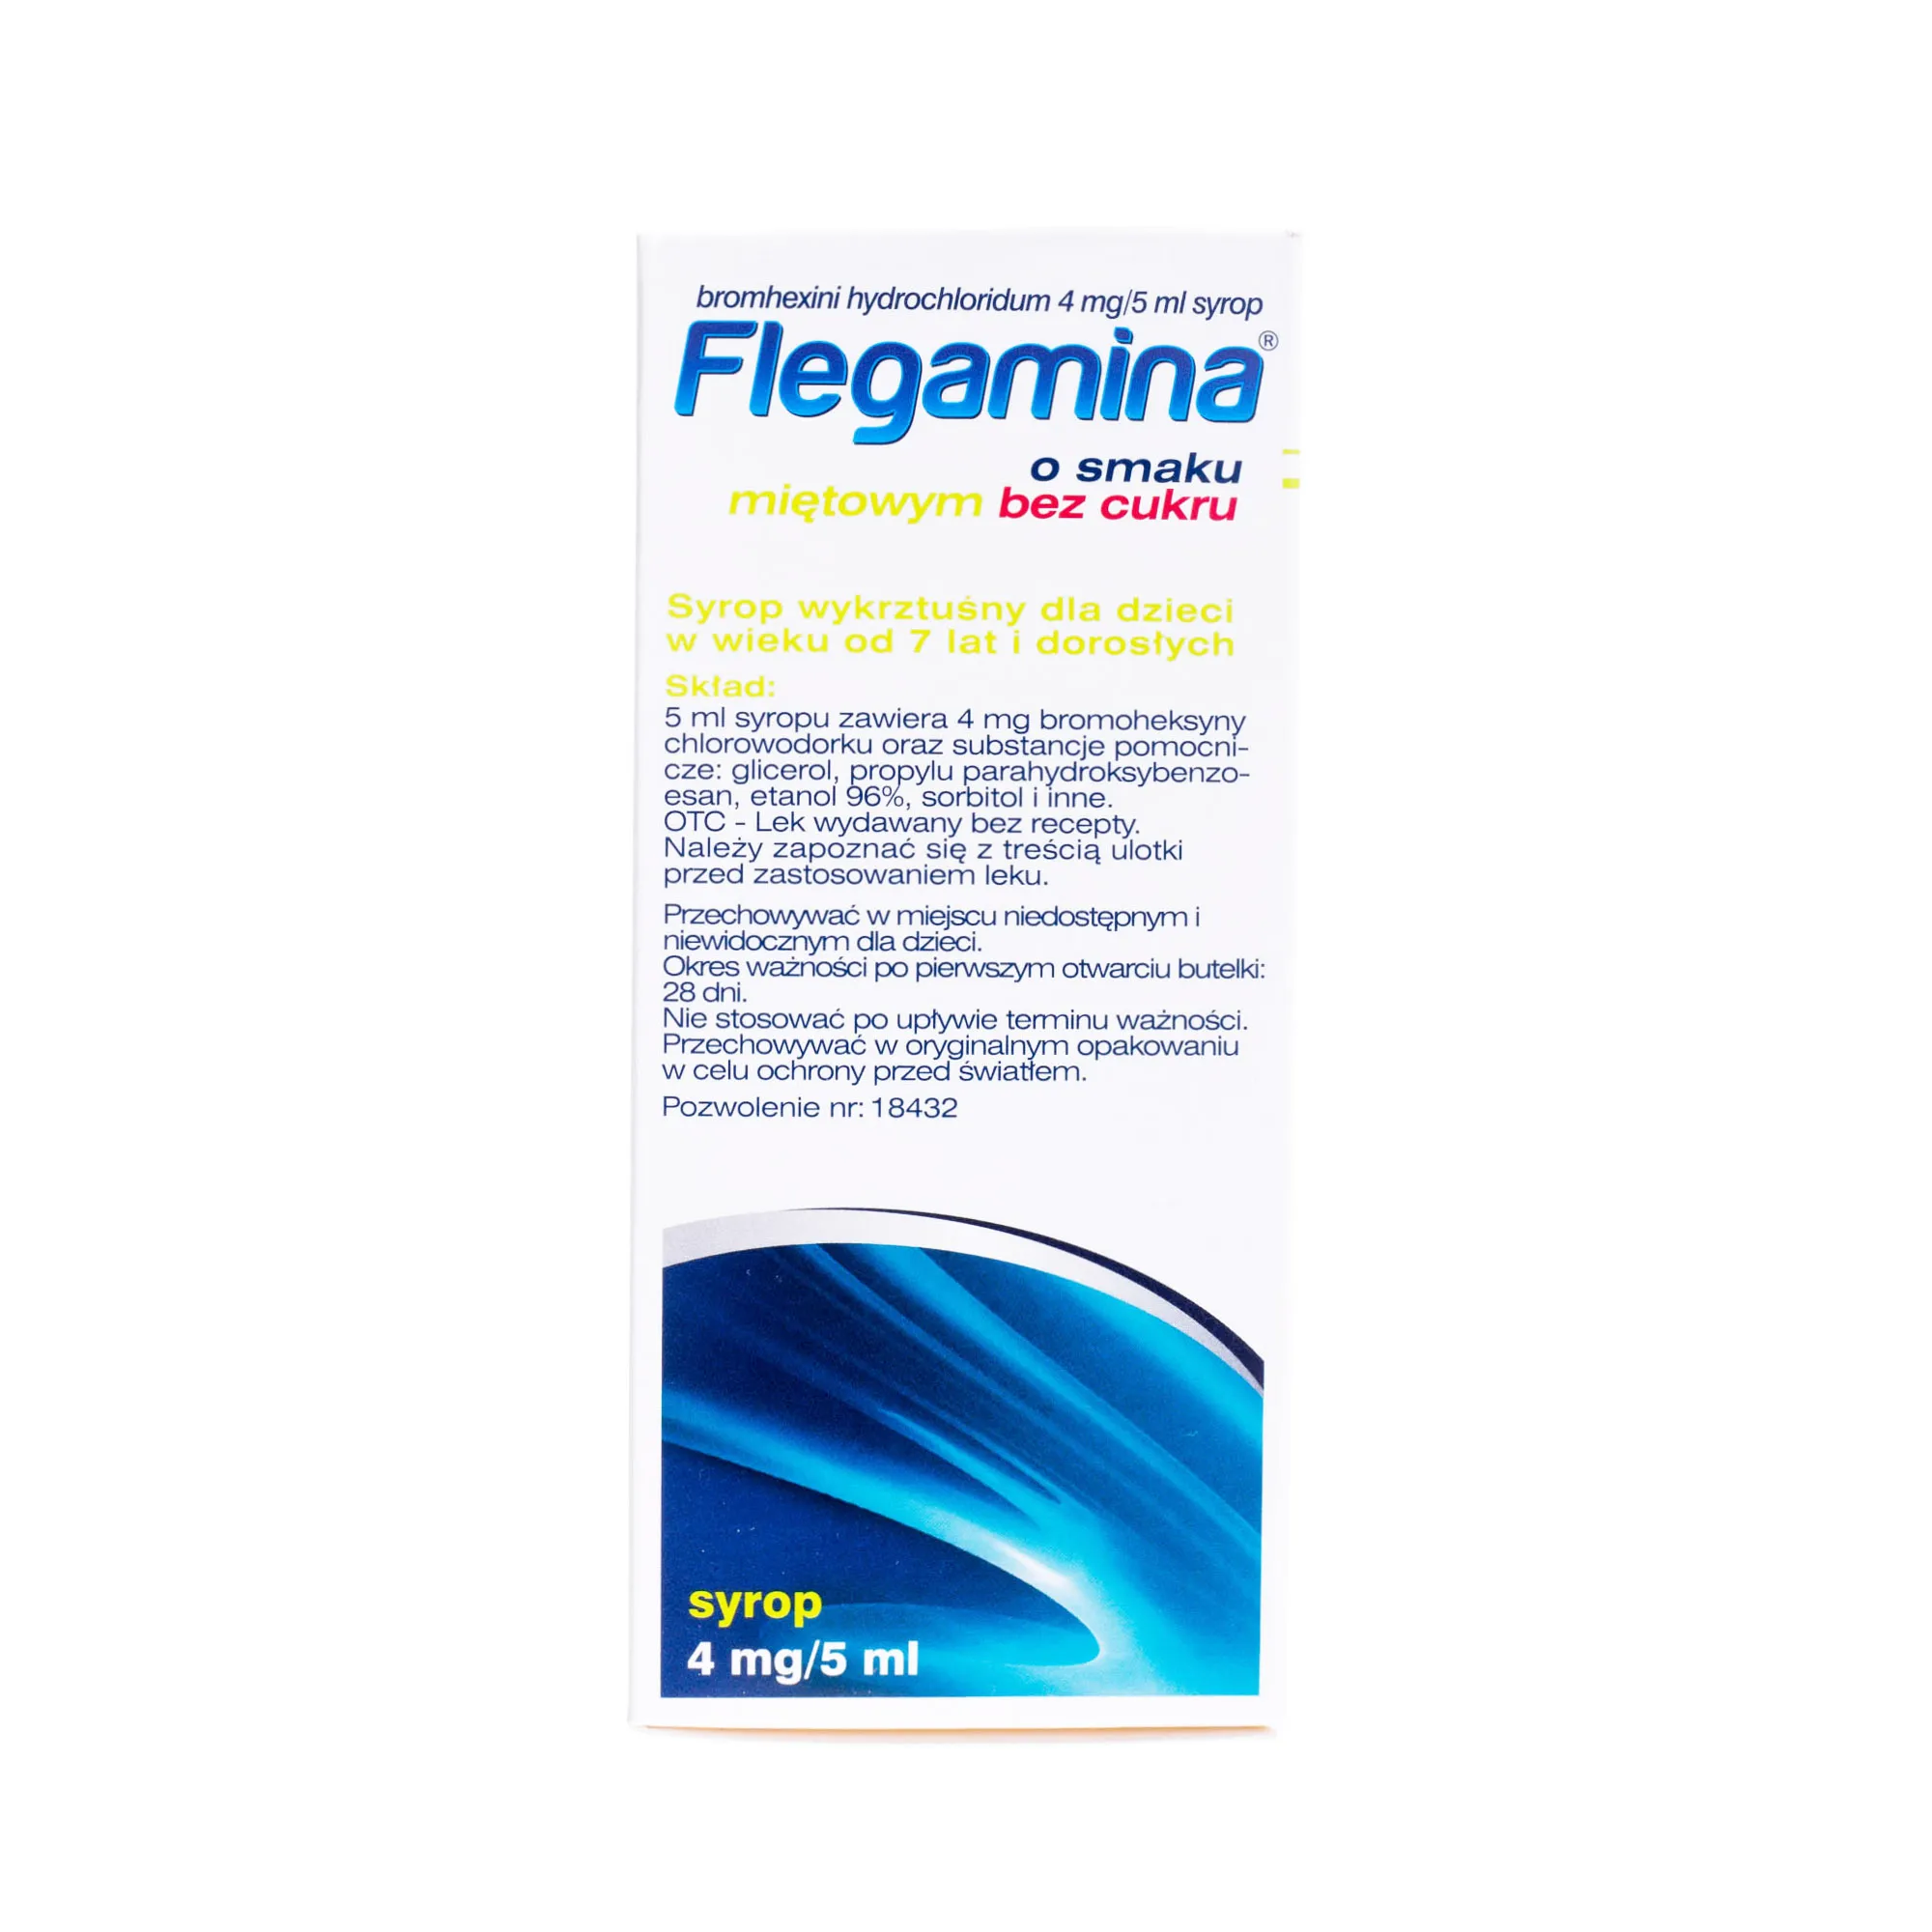 Flegamina Classic o smaku miętowym bez cukru, 4 mg/5ml, syrop, 200 ml 